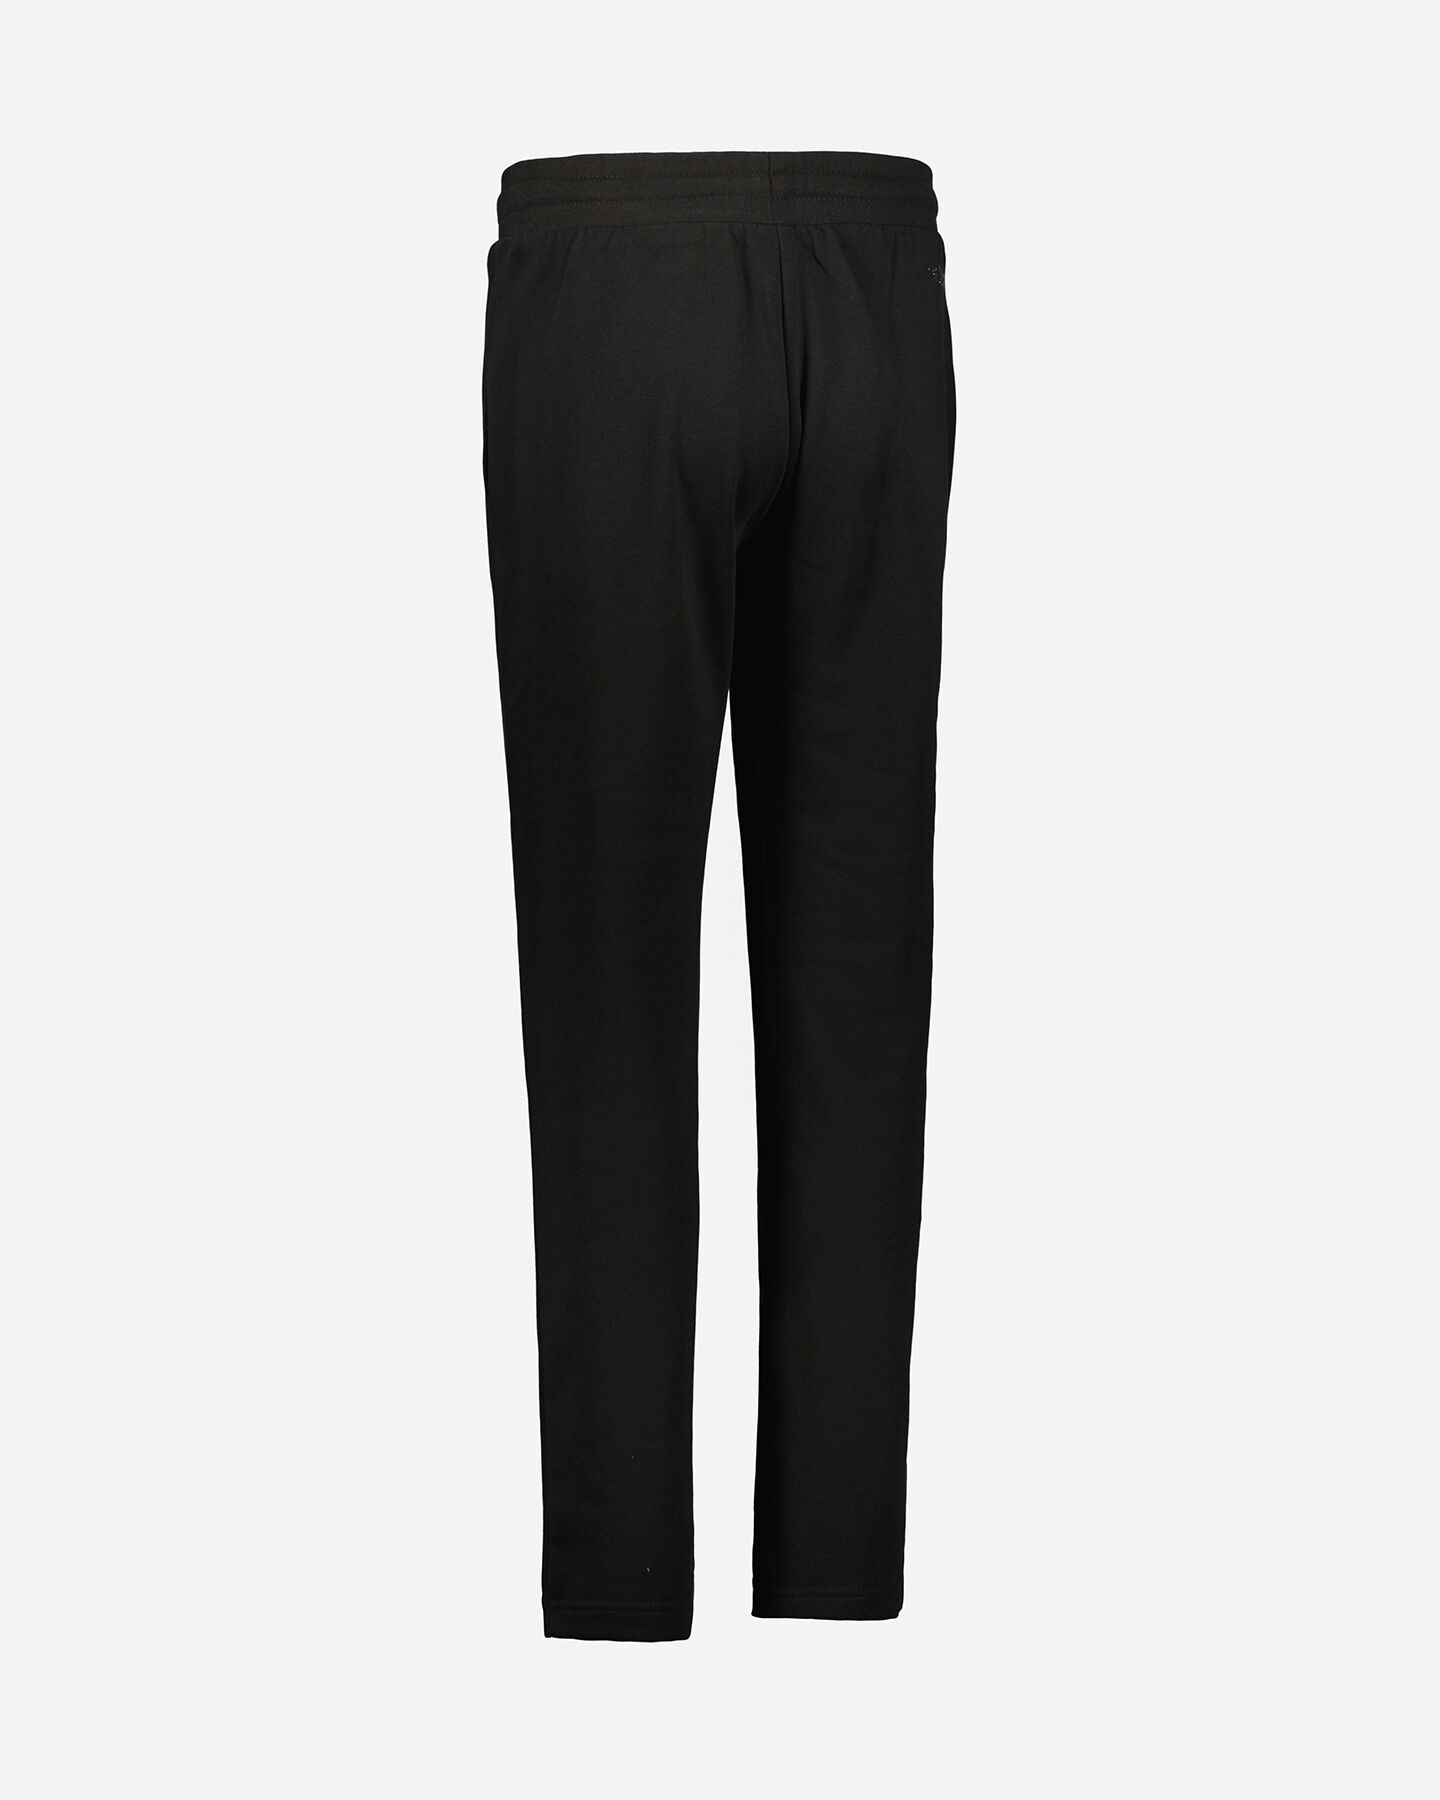  Pantalone ADMIRAL CLASSIC W S4106266|050|S scatto 2